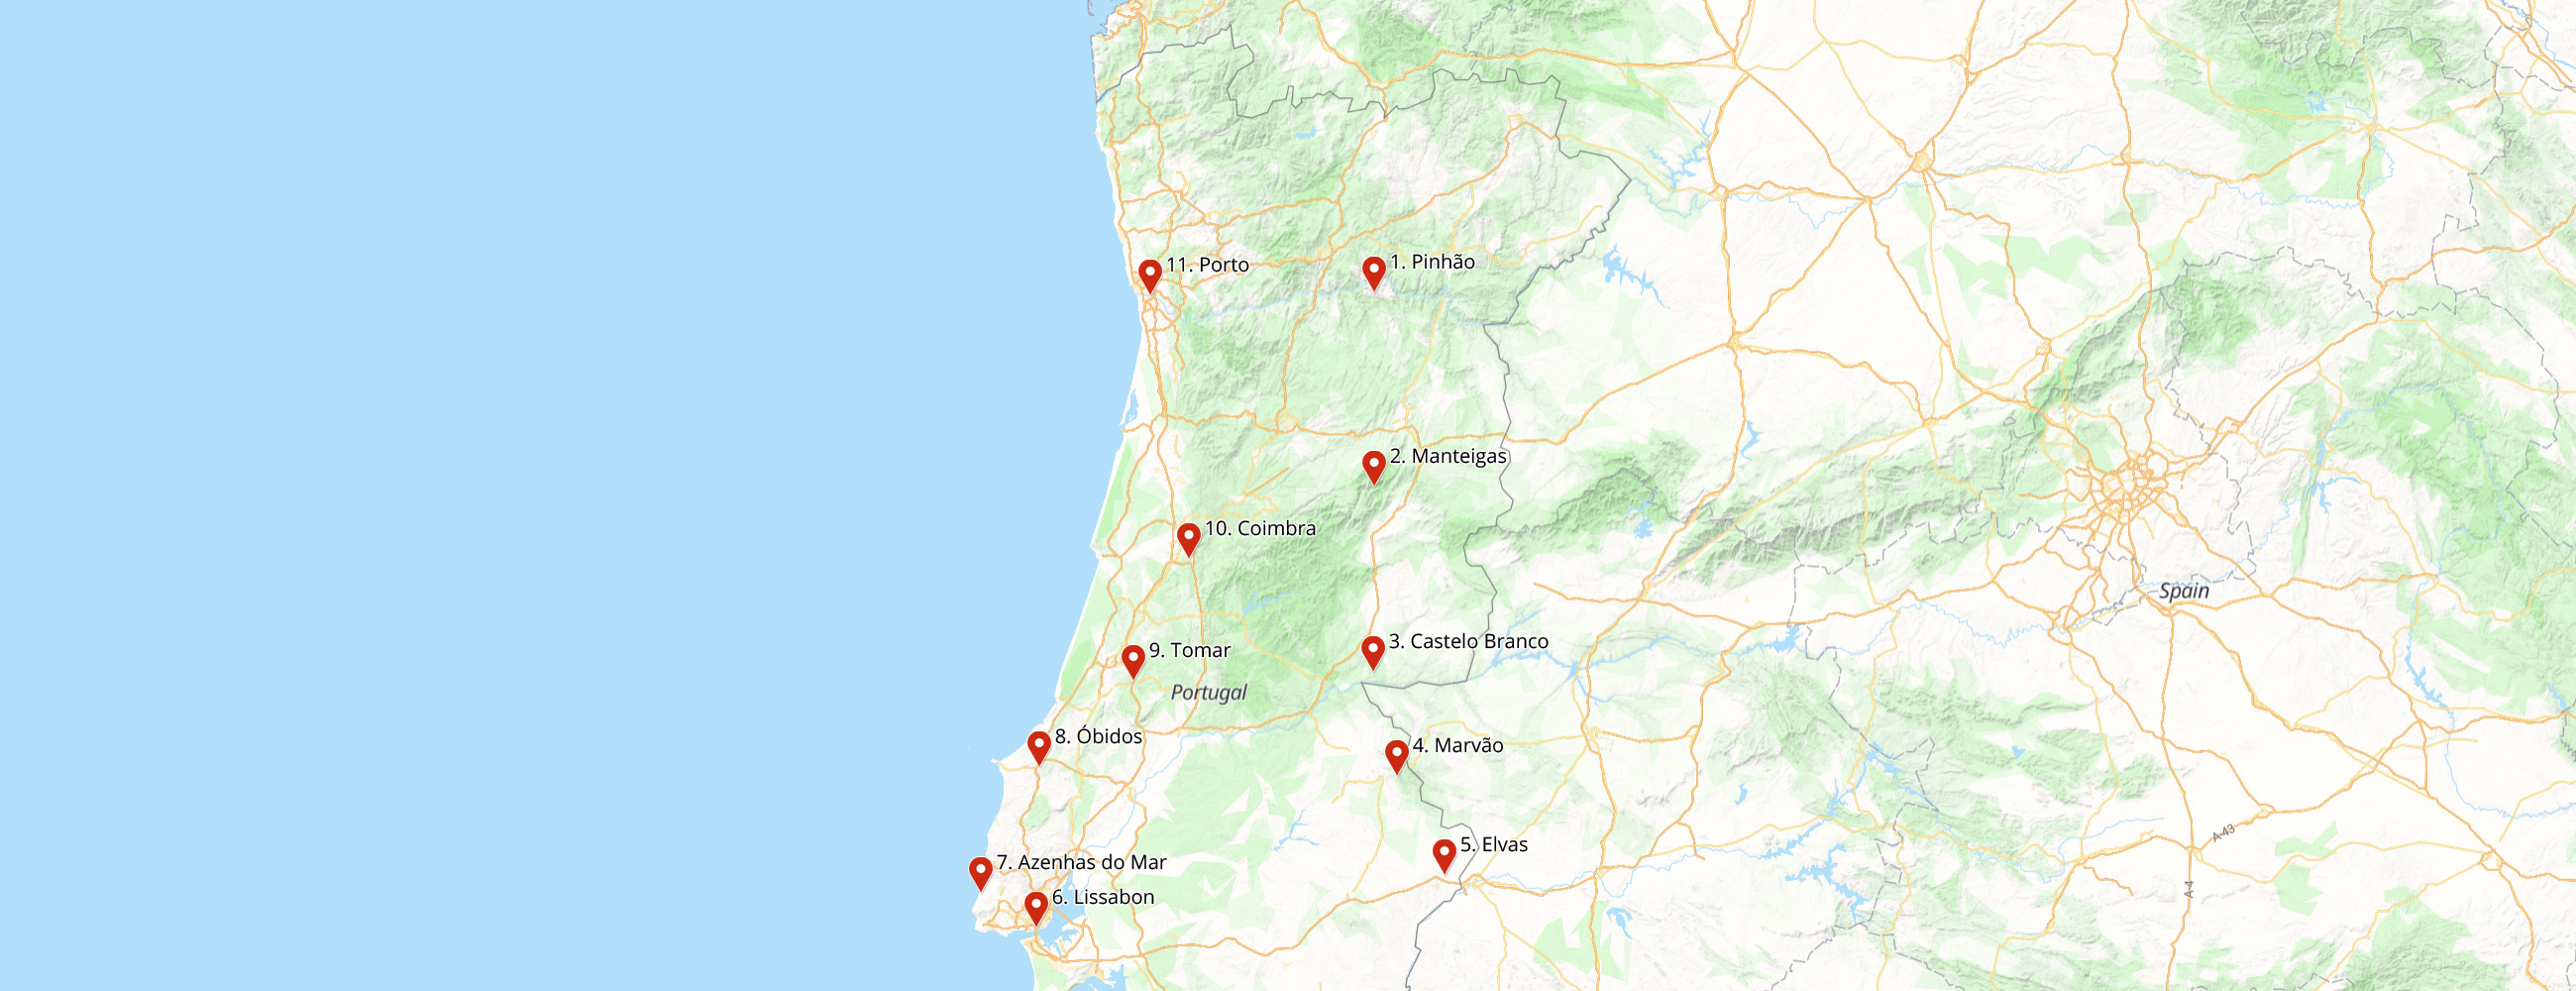 Karte von unserer Rundreise durch Portugal